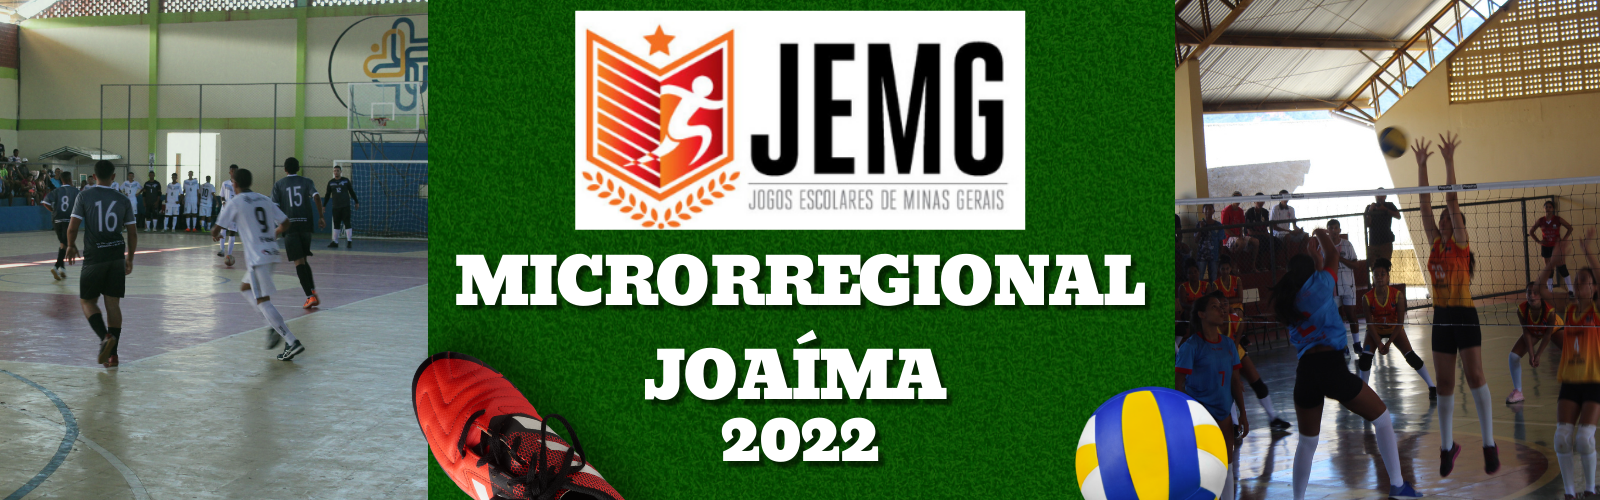 JEMG/2023: Confira a programação das reuniões técnicas presenciais da etapa  microrregional.